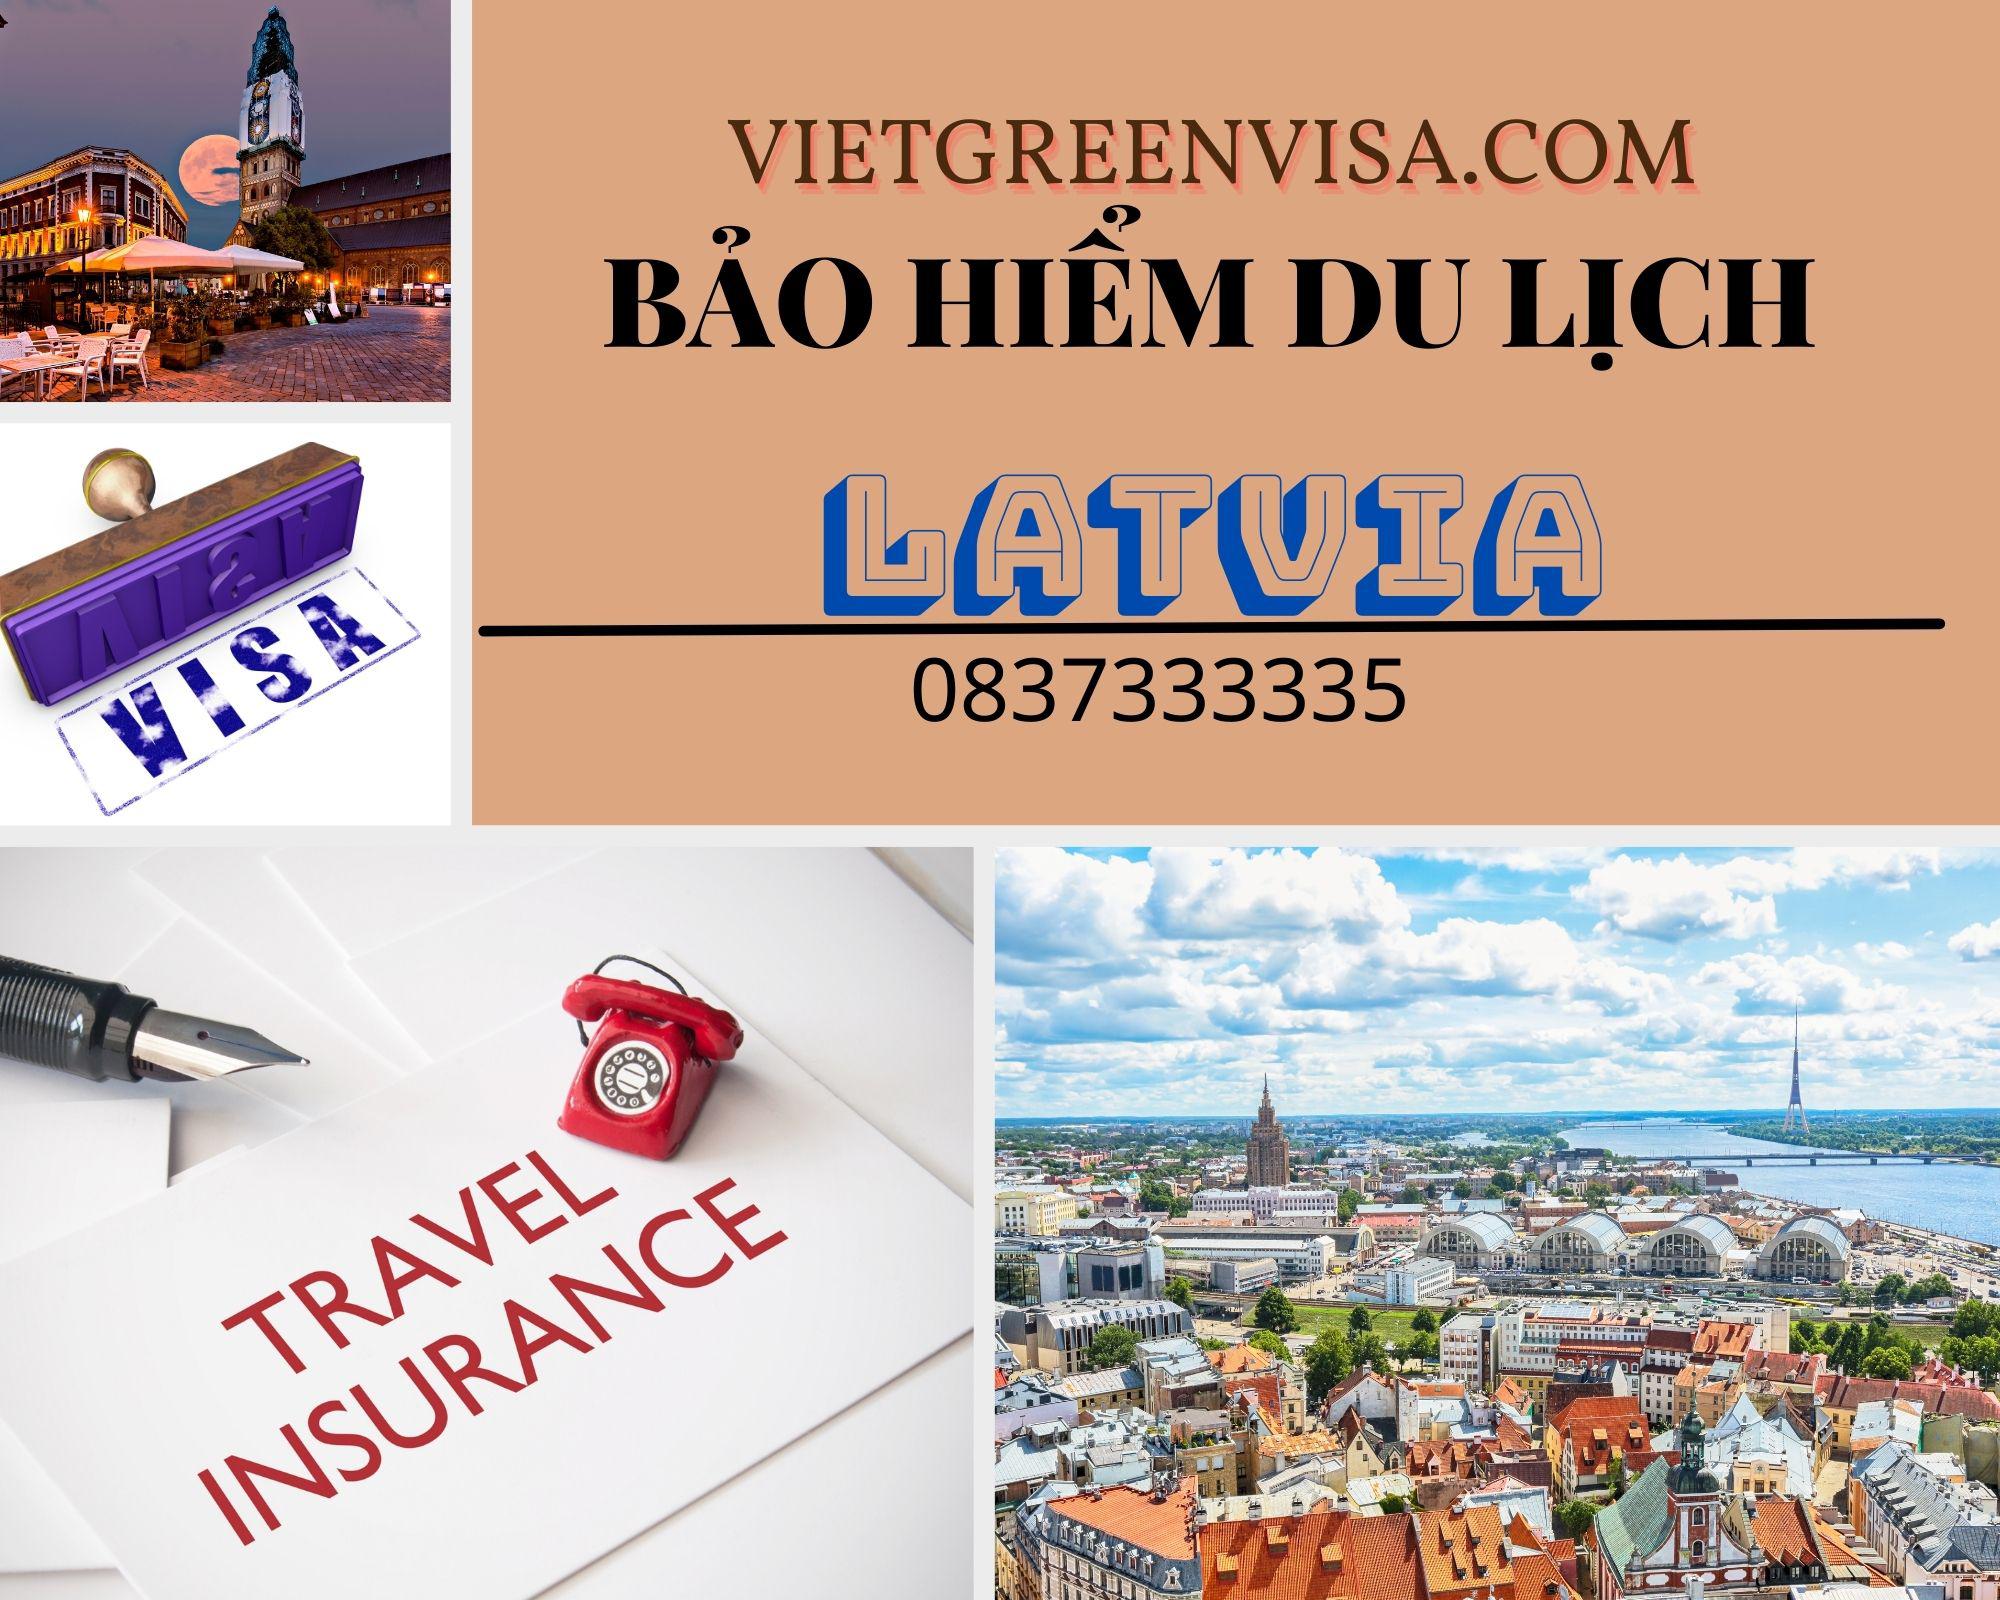 Dịch vụ bảo hiểm du lịch xin visa Latvia giá tốt nhất